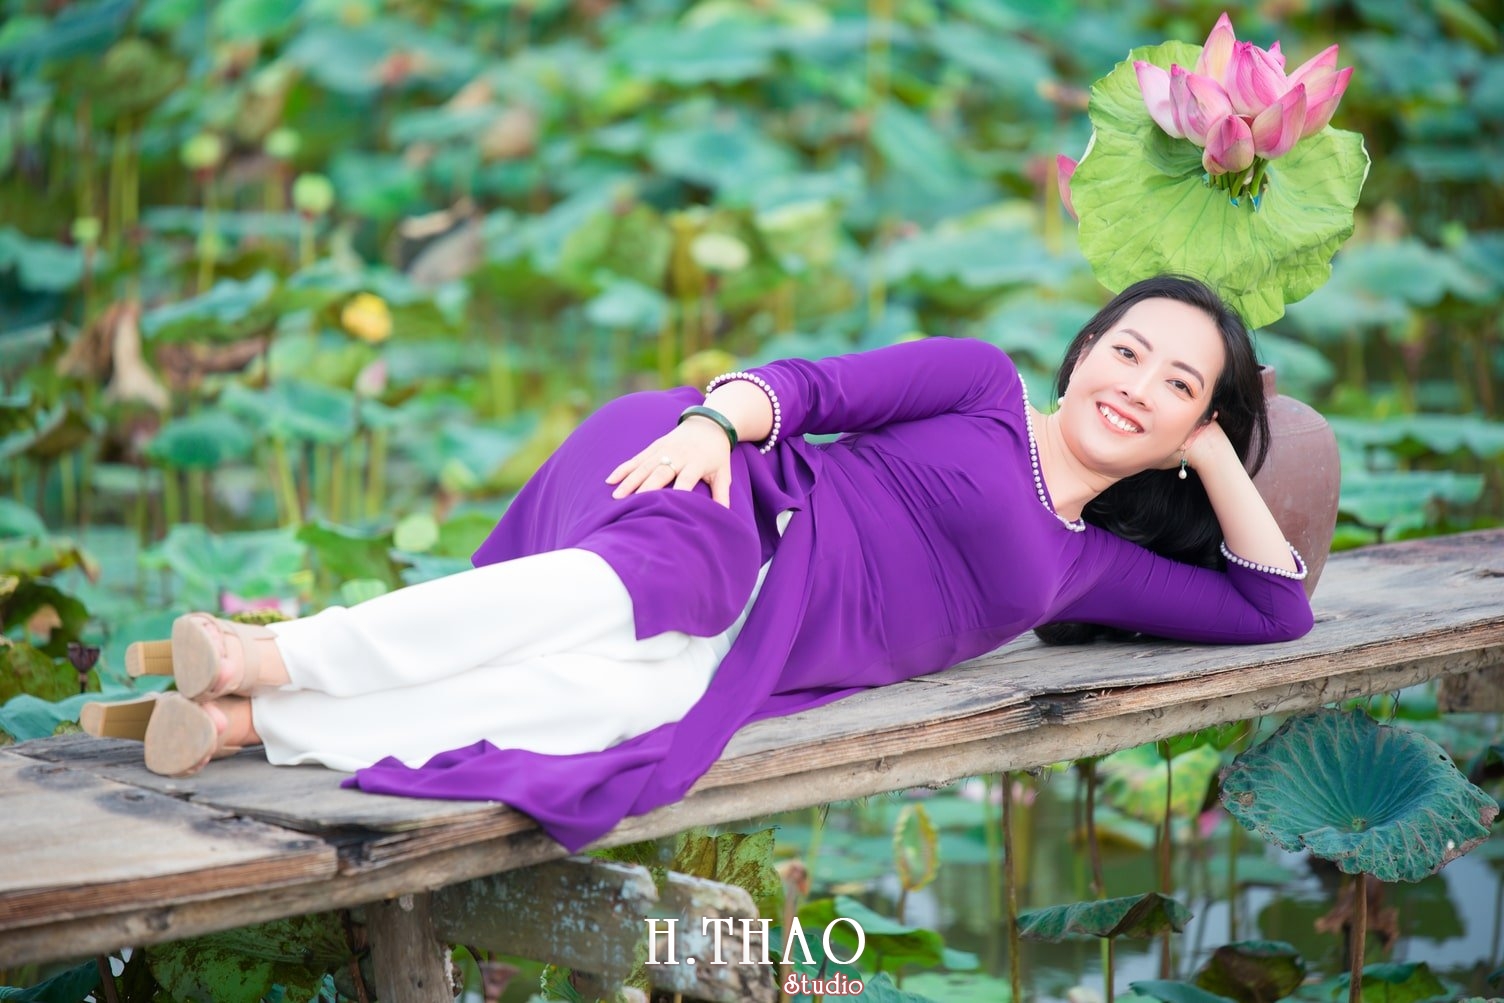 Anh Hoa sen tam da 5 - 49 cách tạo dáng chụp ảnh với áo dài tuyệt đẹp - HThao Studio